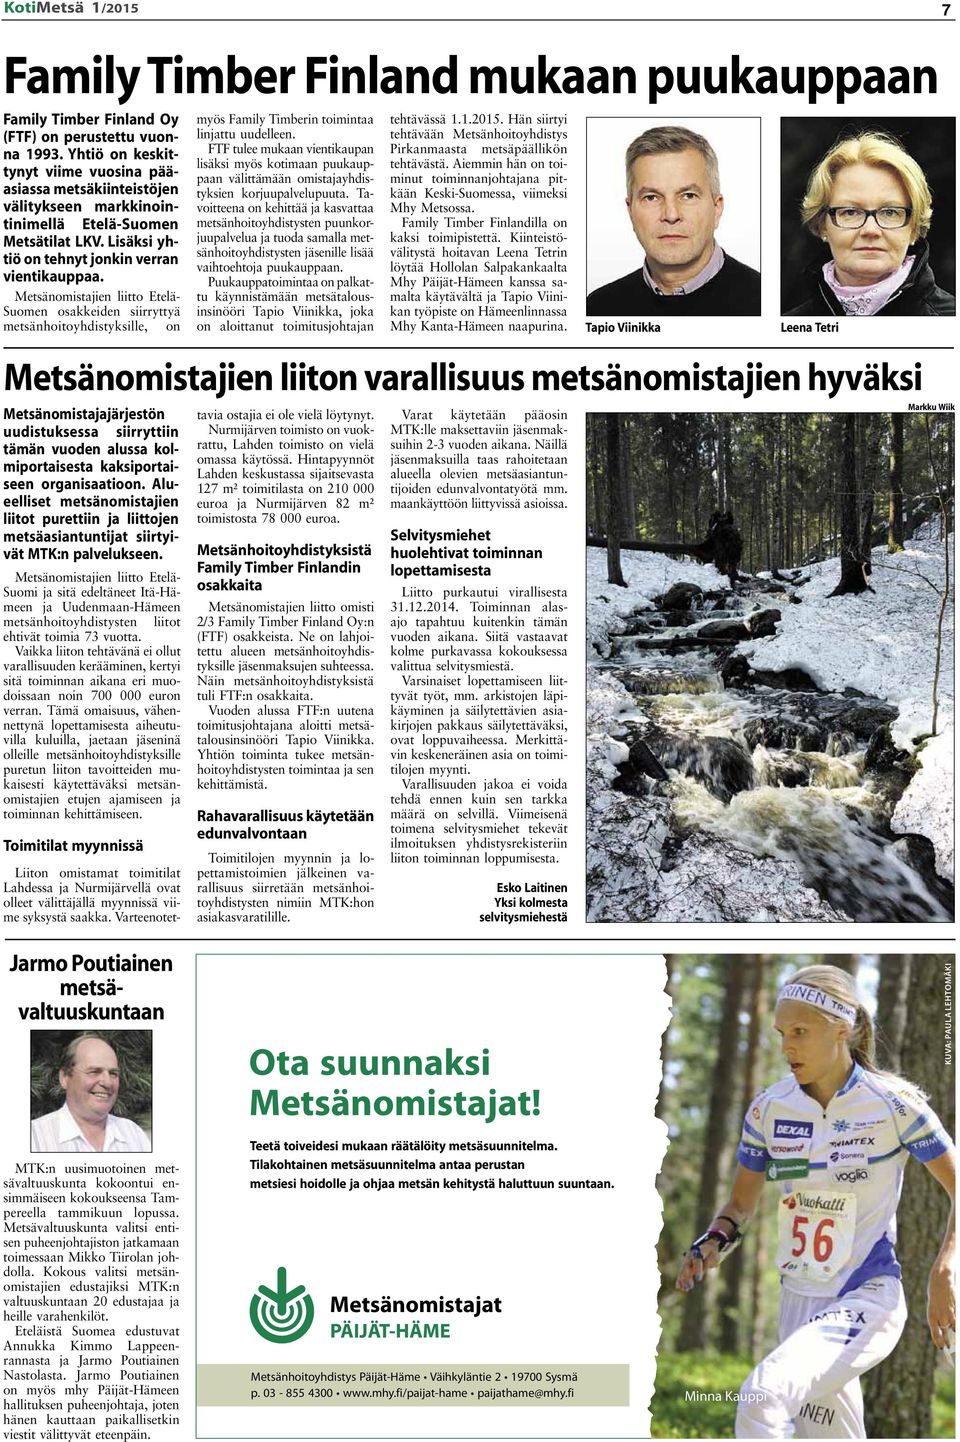 Metsänomistajien liitto Etelä- Suomen osakkeiden siirryttyä metsänhoitoyhdistyksille, on Metsänomistajajärjestön uudistuksessa siirryttiin tämän vuoden alussa kolmiportaisesta kaksiportaiseen